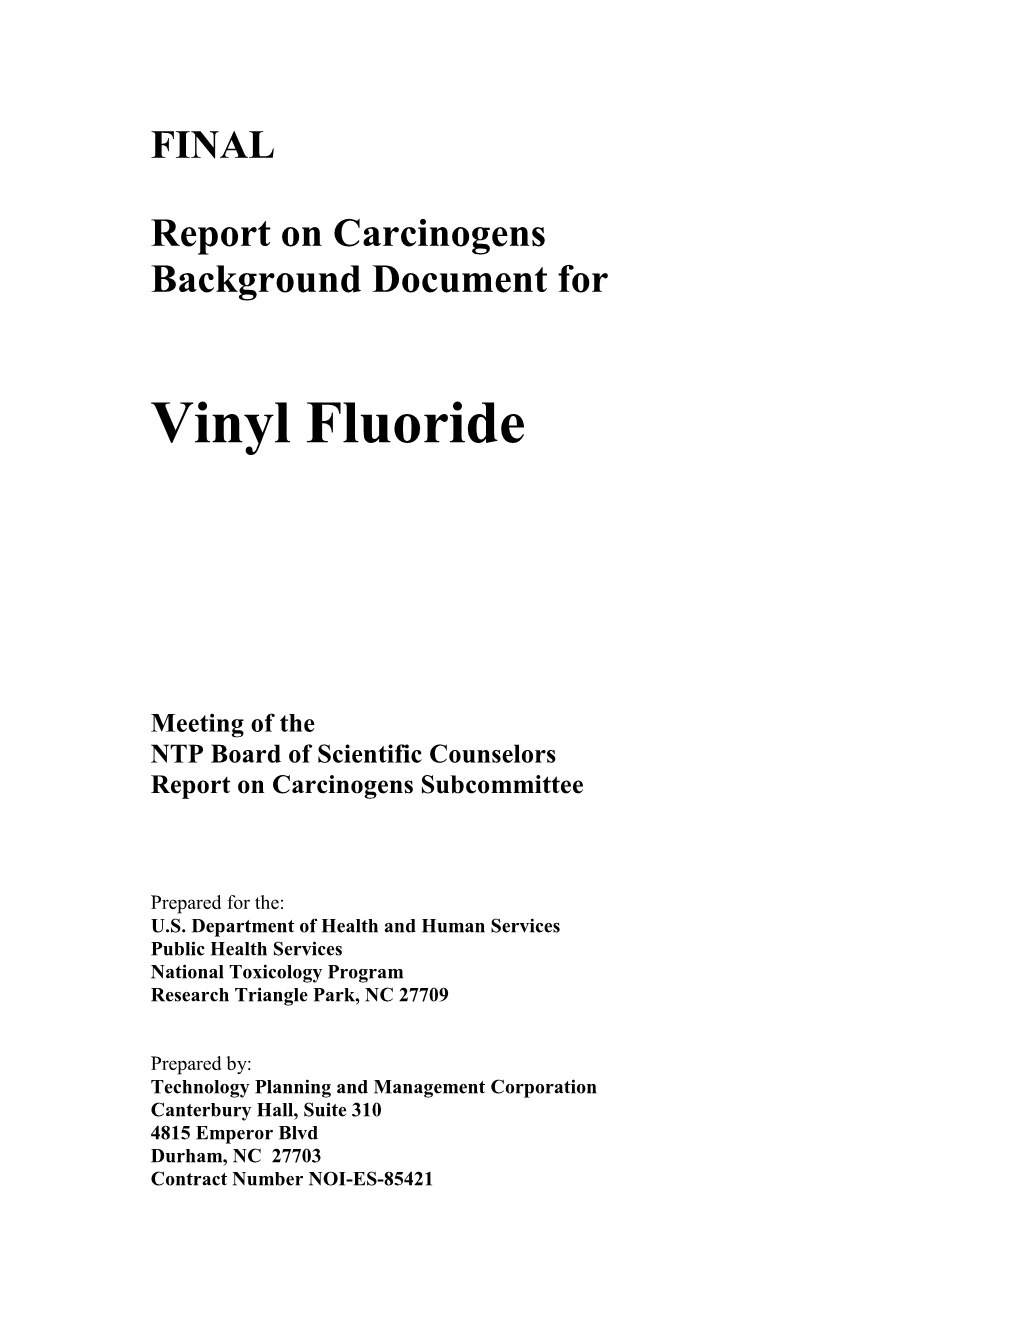 Vinyl Fluoride